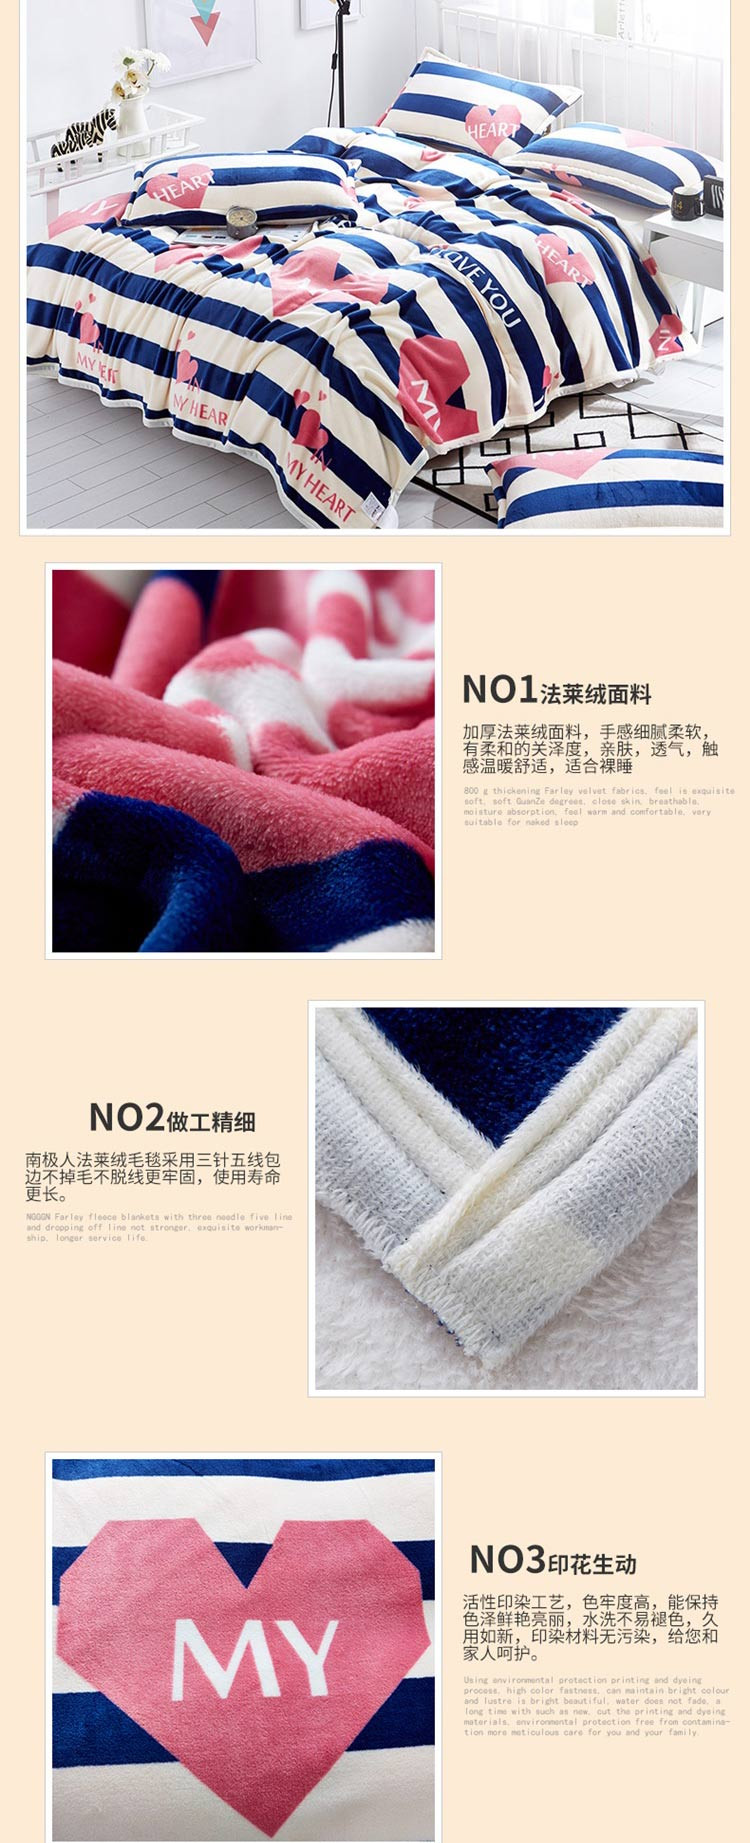 南极人 可水洗加厚法兰绒毛毯 180*200cm 两款可选 空调毯子薄被子 床上用品